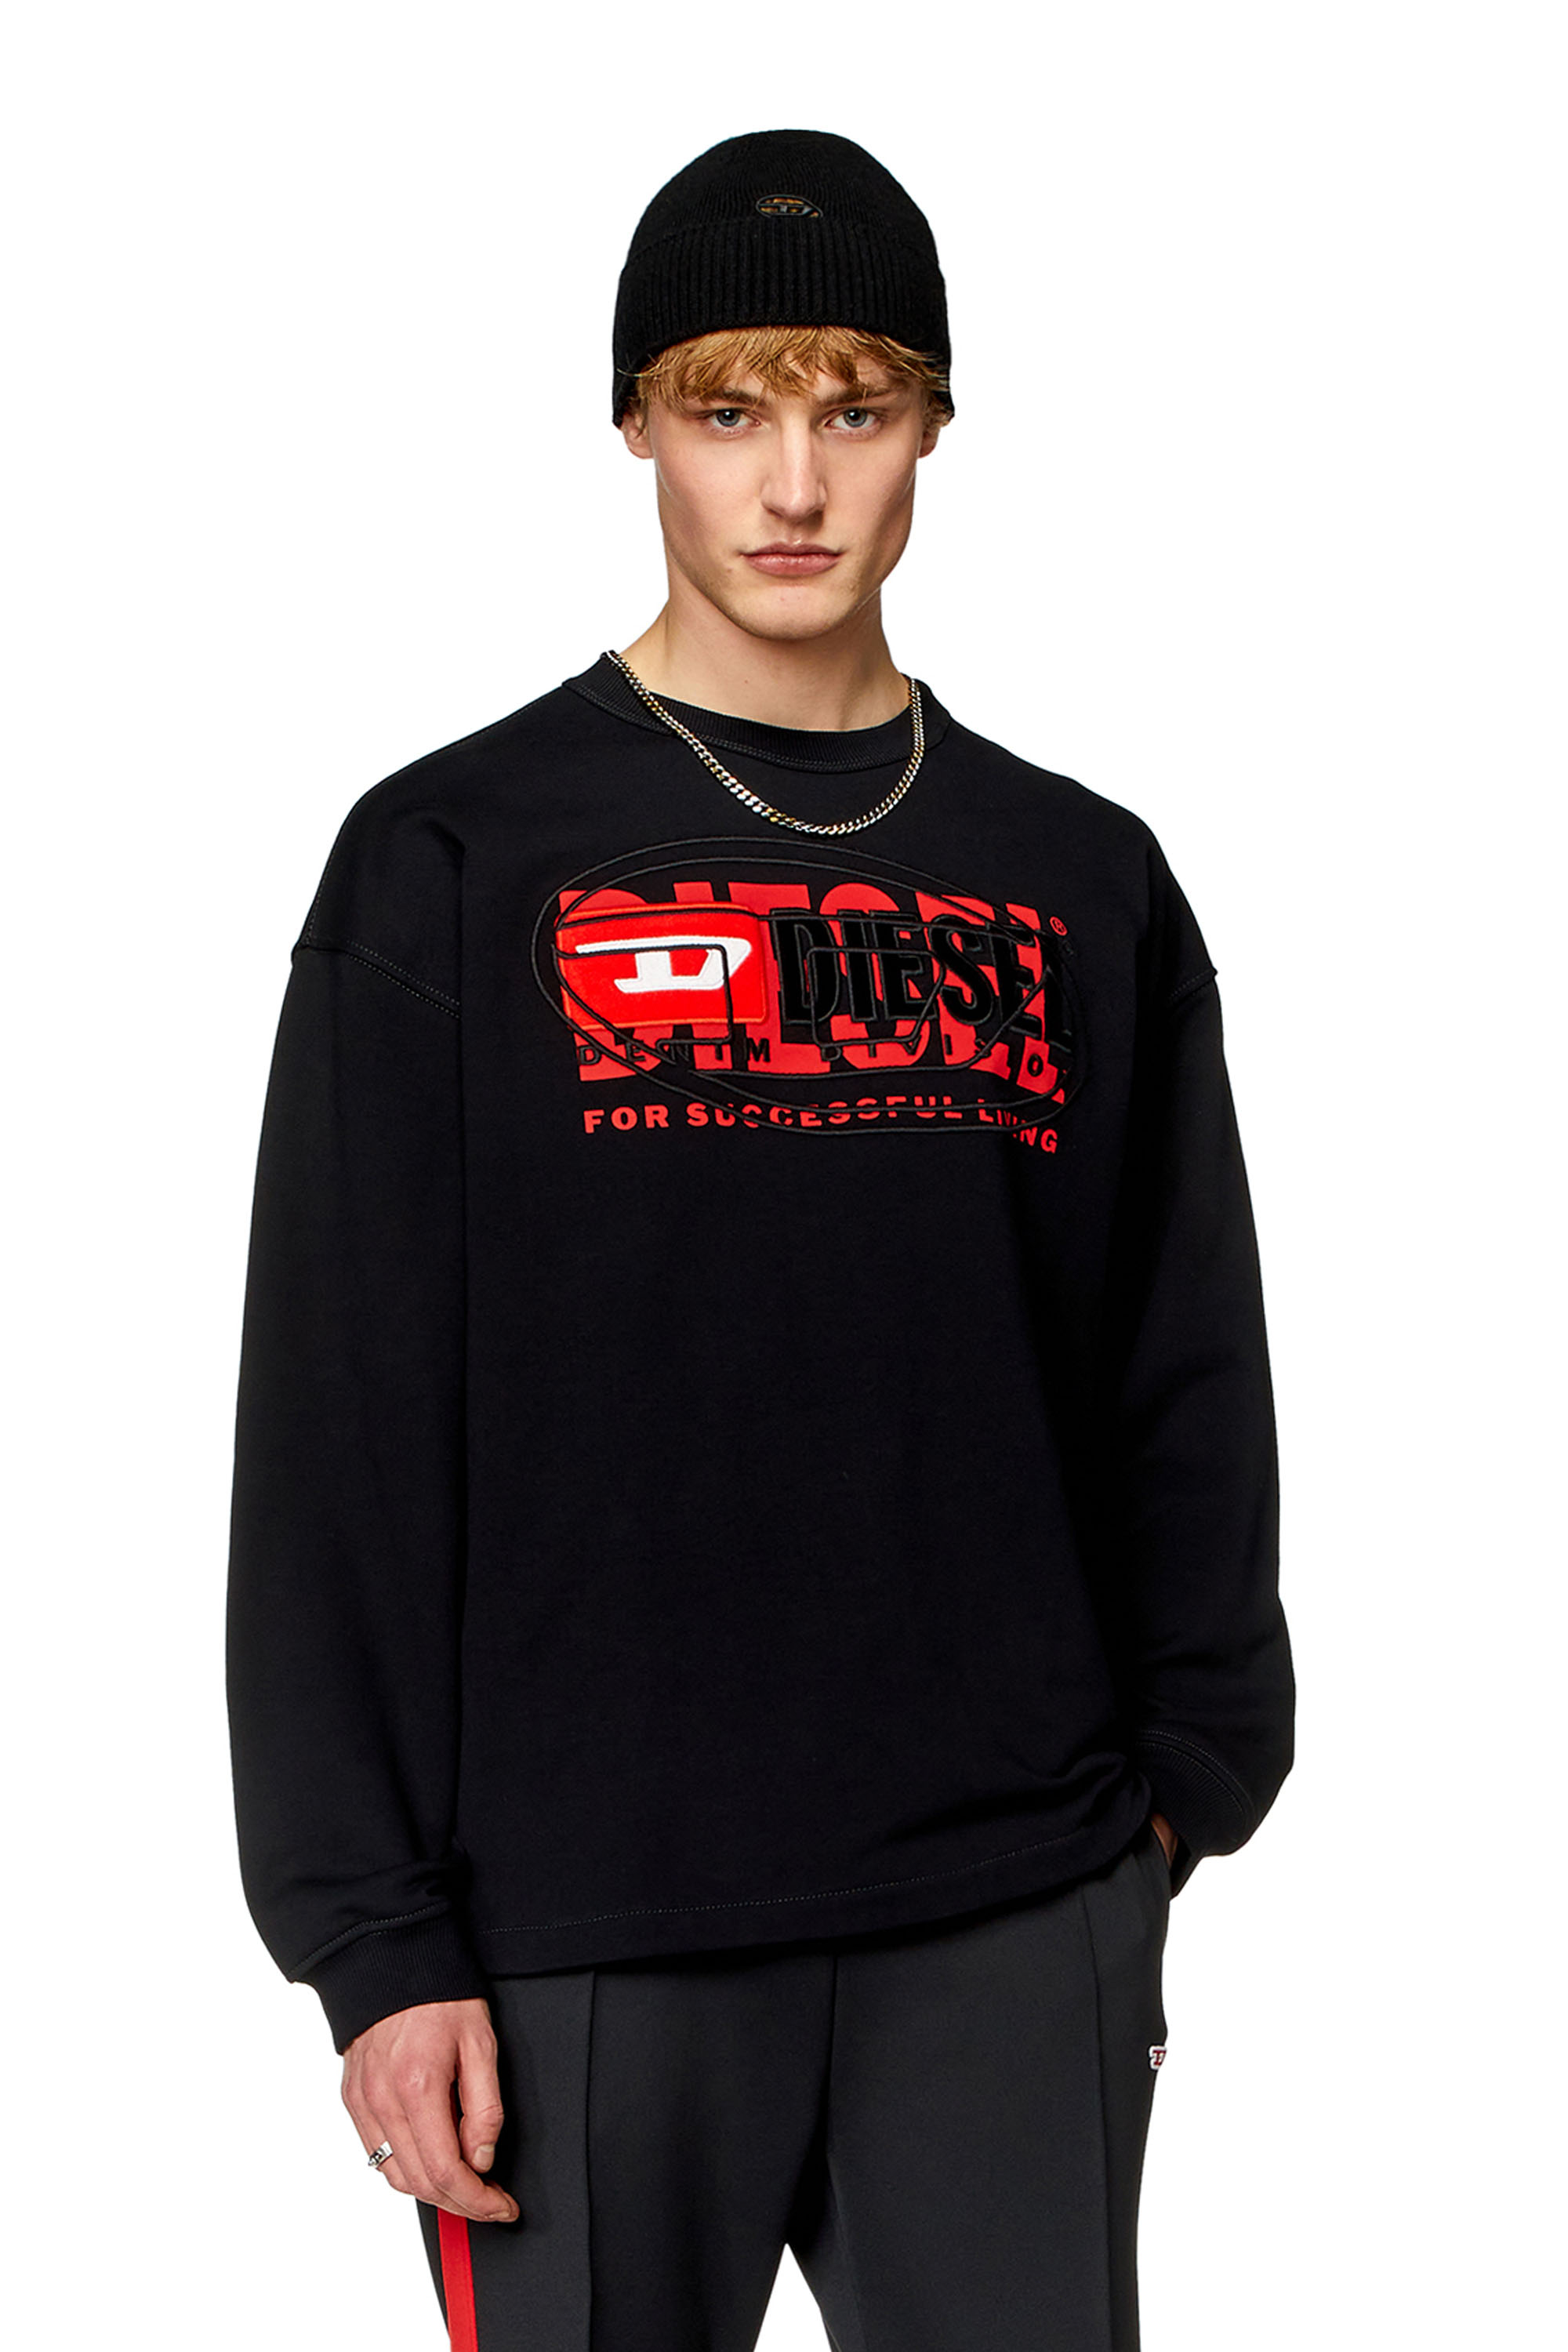 Diesel - Sweat-shirt avec logos superposés - Pull Cotton - Homme - Noir